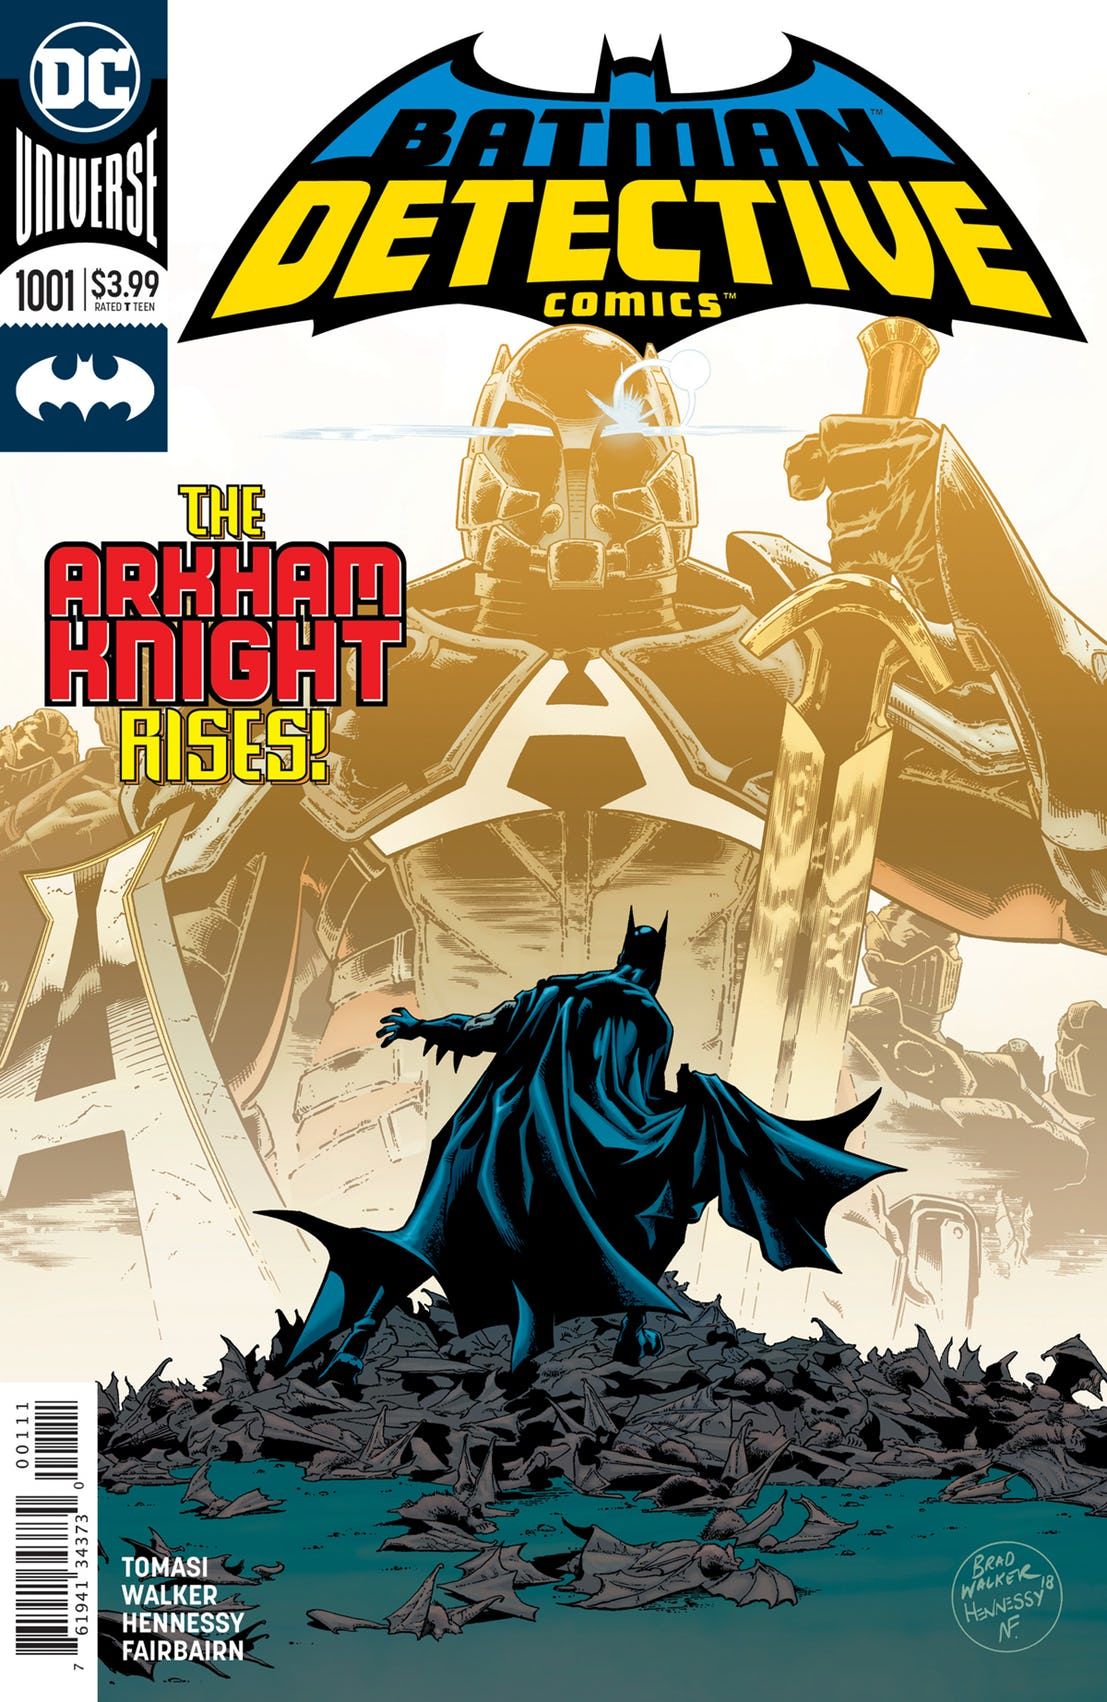 Couverture de Detective Comics #1001 (DC Comics) par Brad Walker et Andrew Hennessy